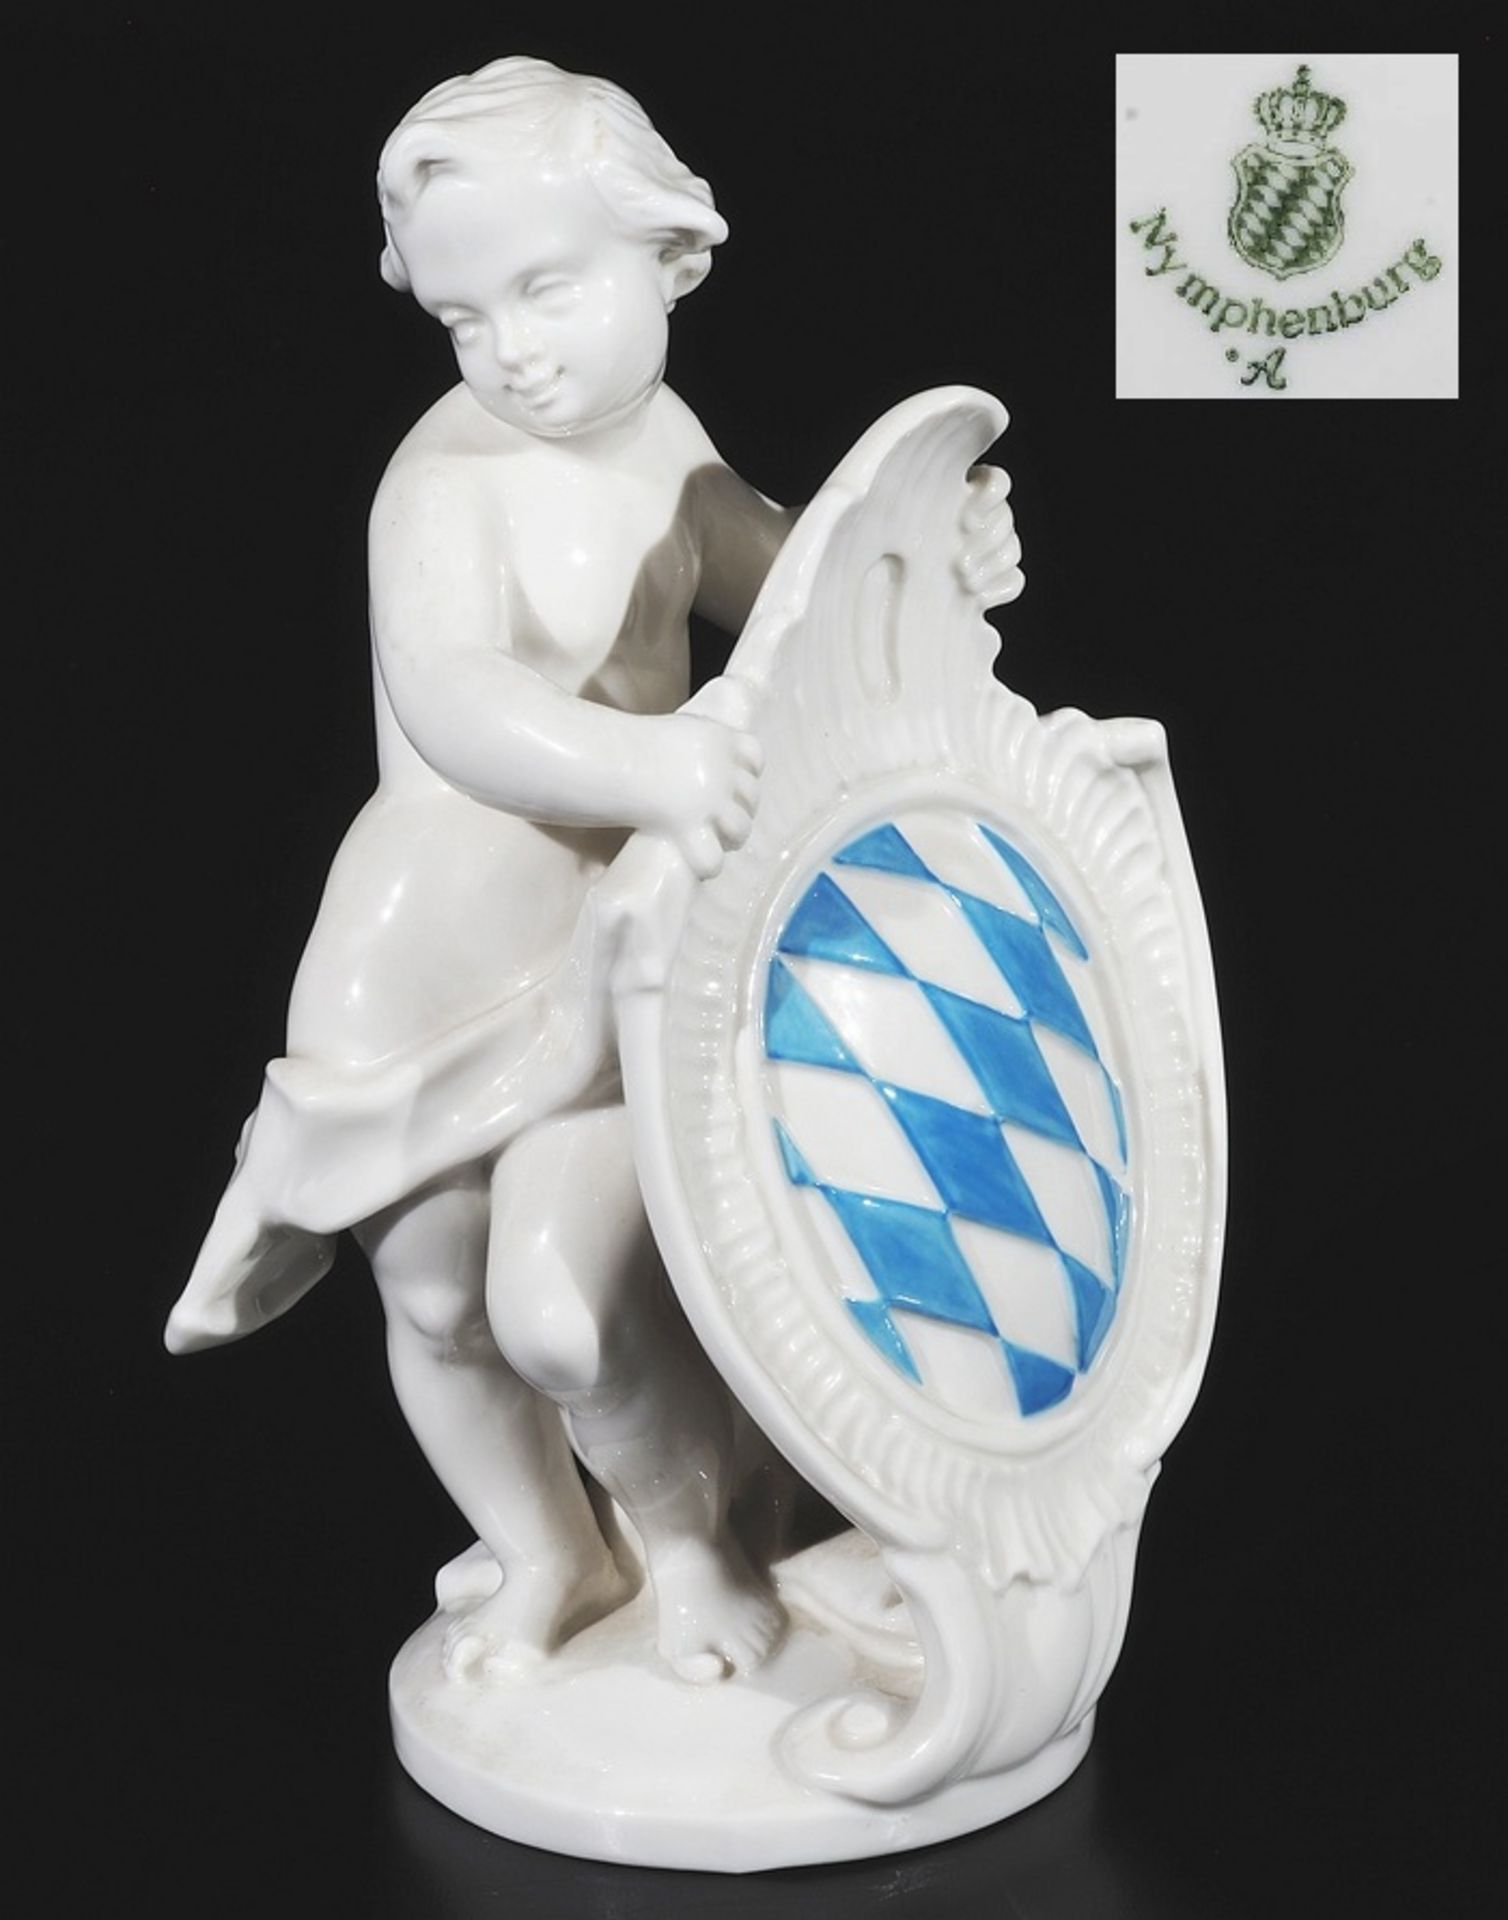 Putto mit bayerischem Wappen. NYMPHENBURG, Marke 1976 - 1997, Modellnummer 2124, Modell Entwurf